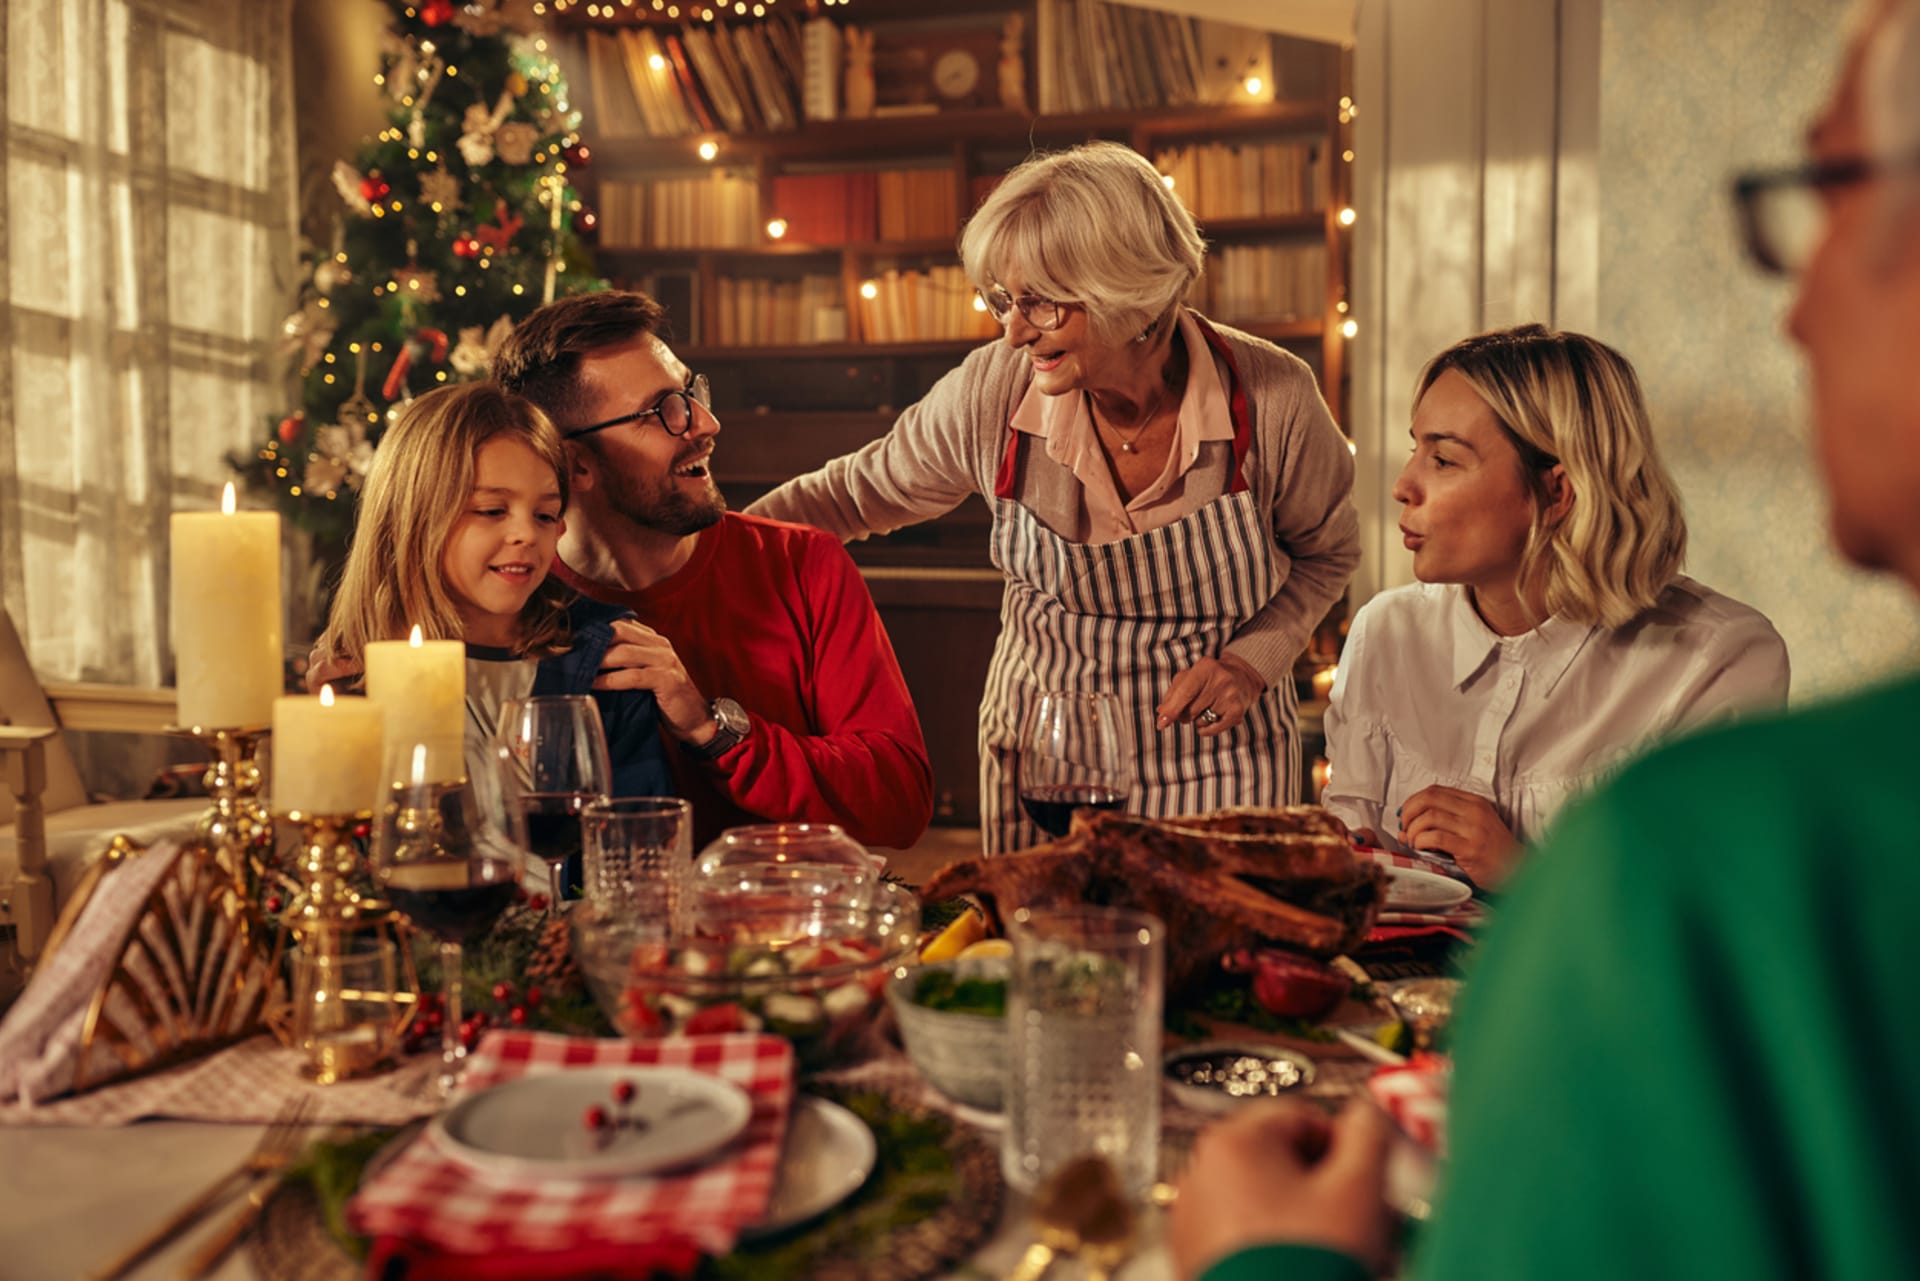 Vánoční svátky jsou ale také časem věnovaným rodině, která může být významným rušivým elementem.